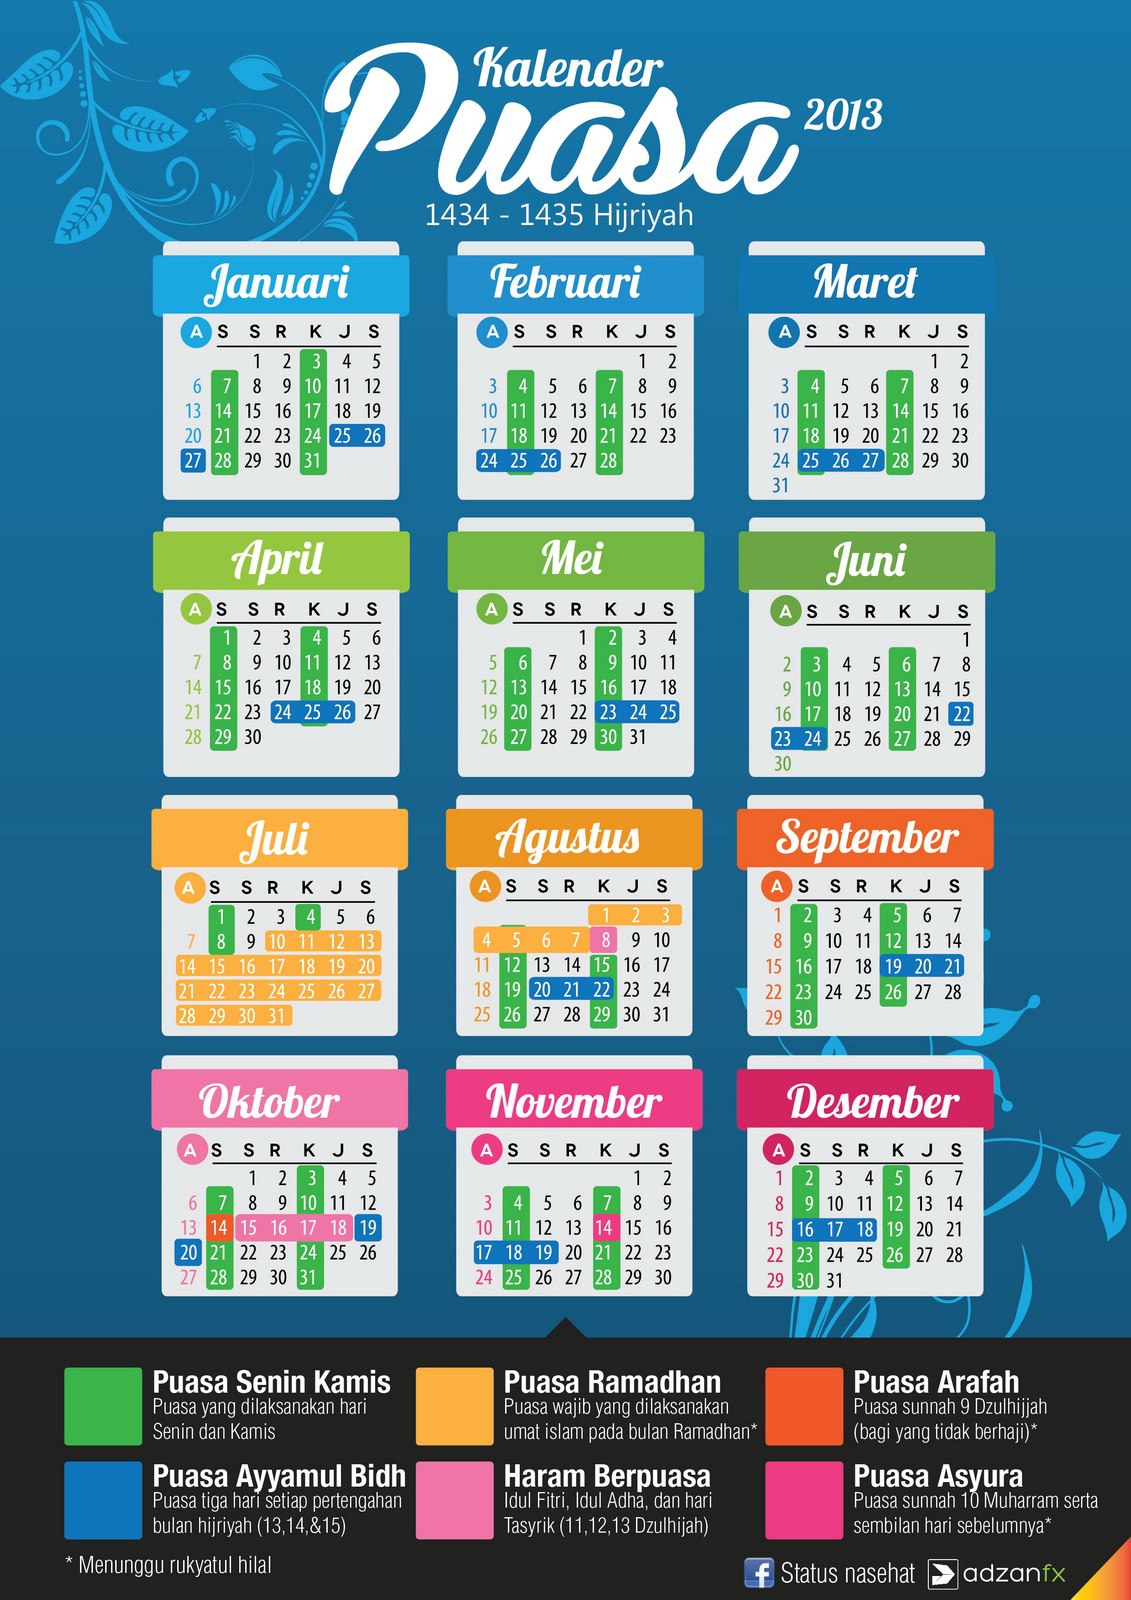 Jadwal / Kalender Puasa Sunnah Tahun 2013 Ukuran Besar